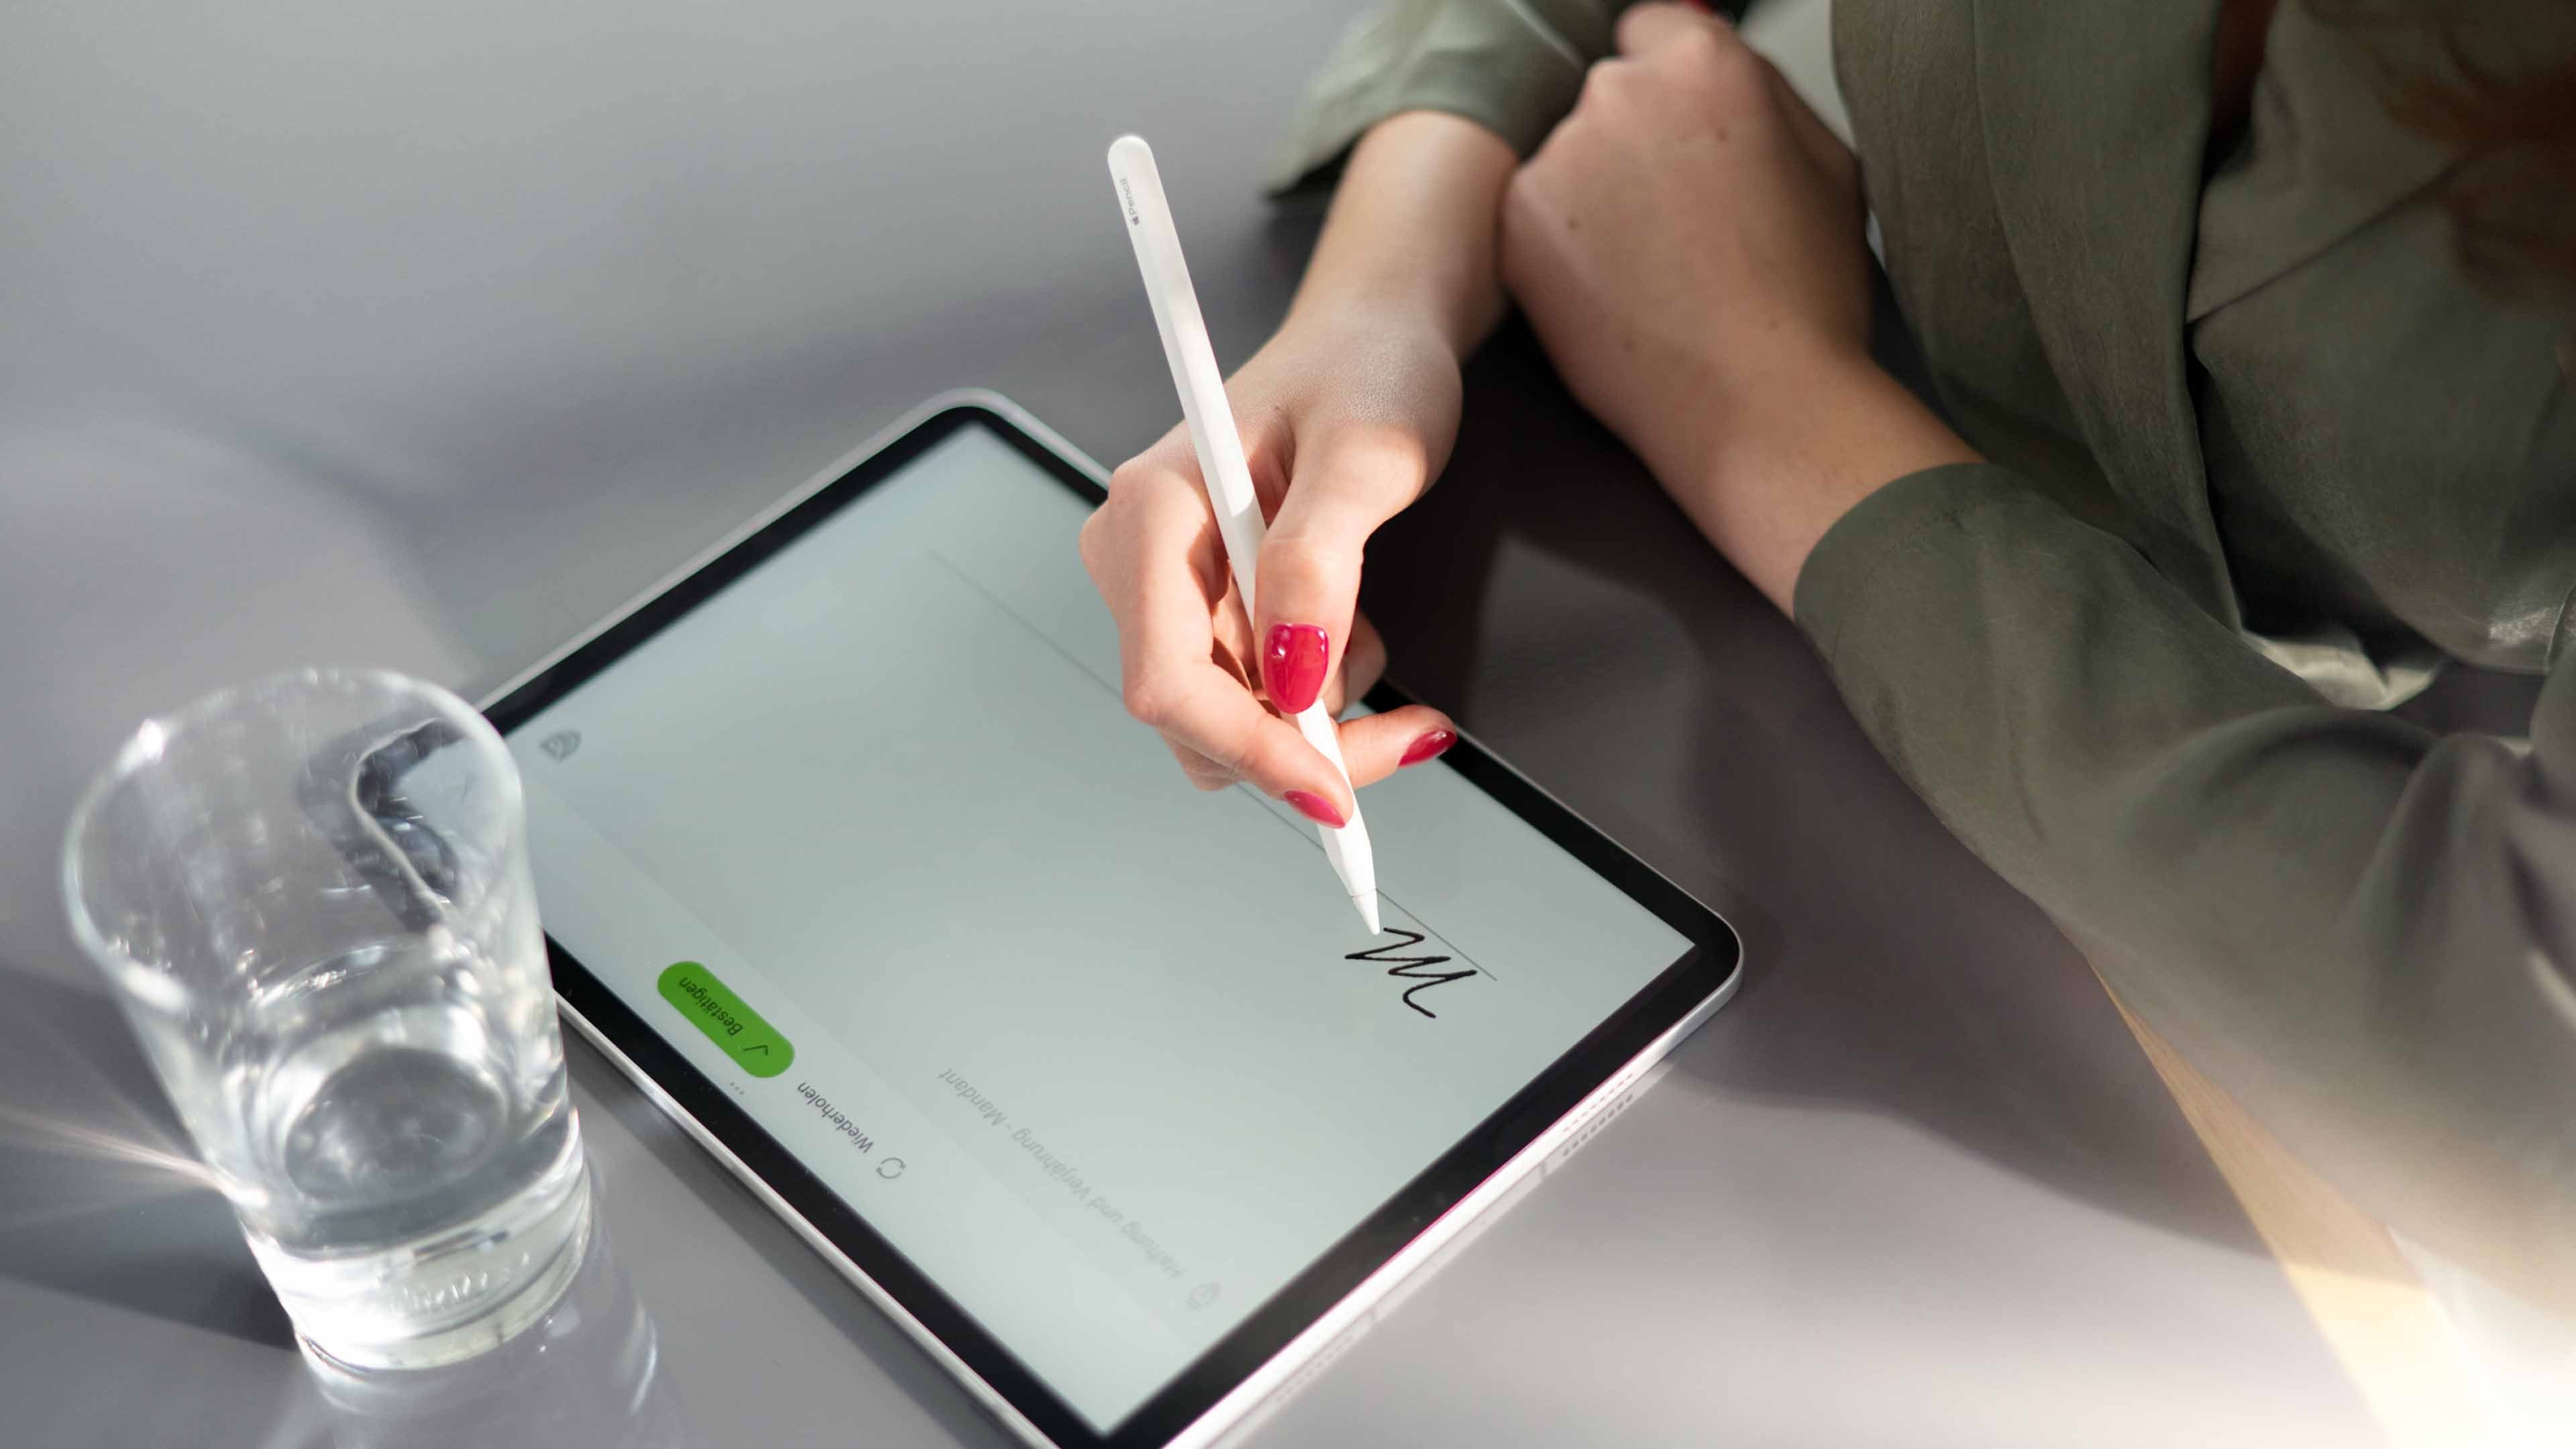 Una donna con le unghie rosse appone la firma digitale sul tablet